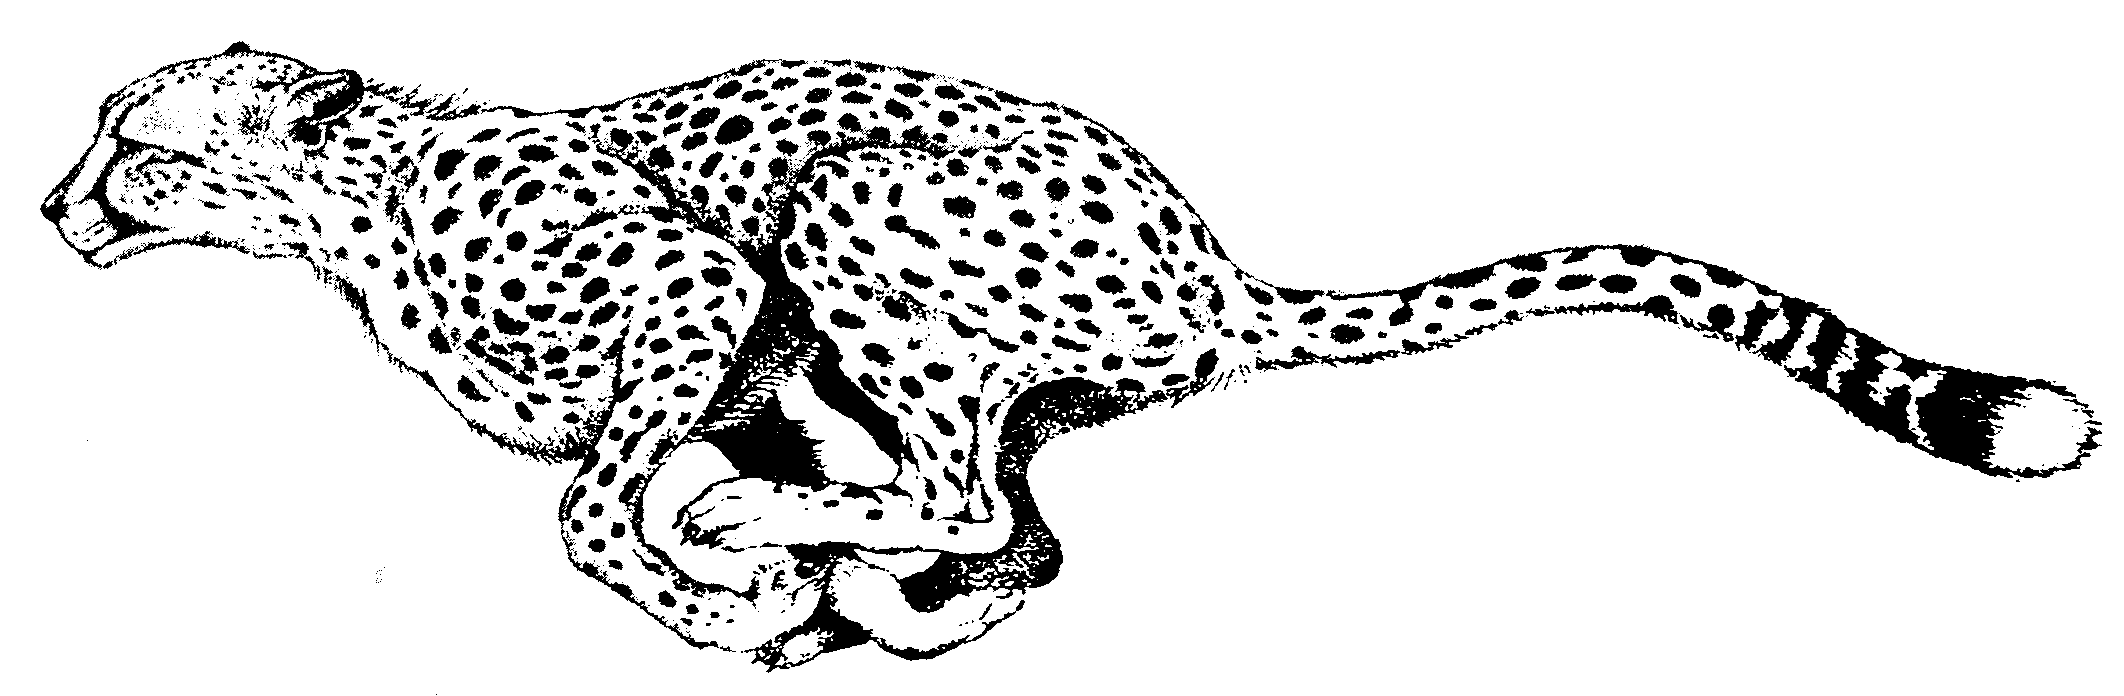 cheetah clipart silhouette